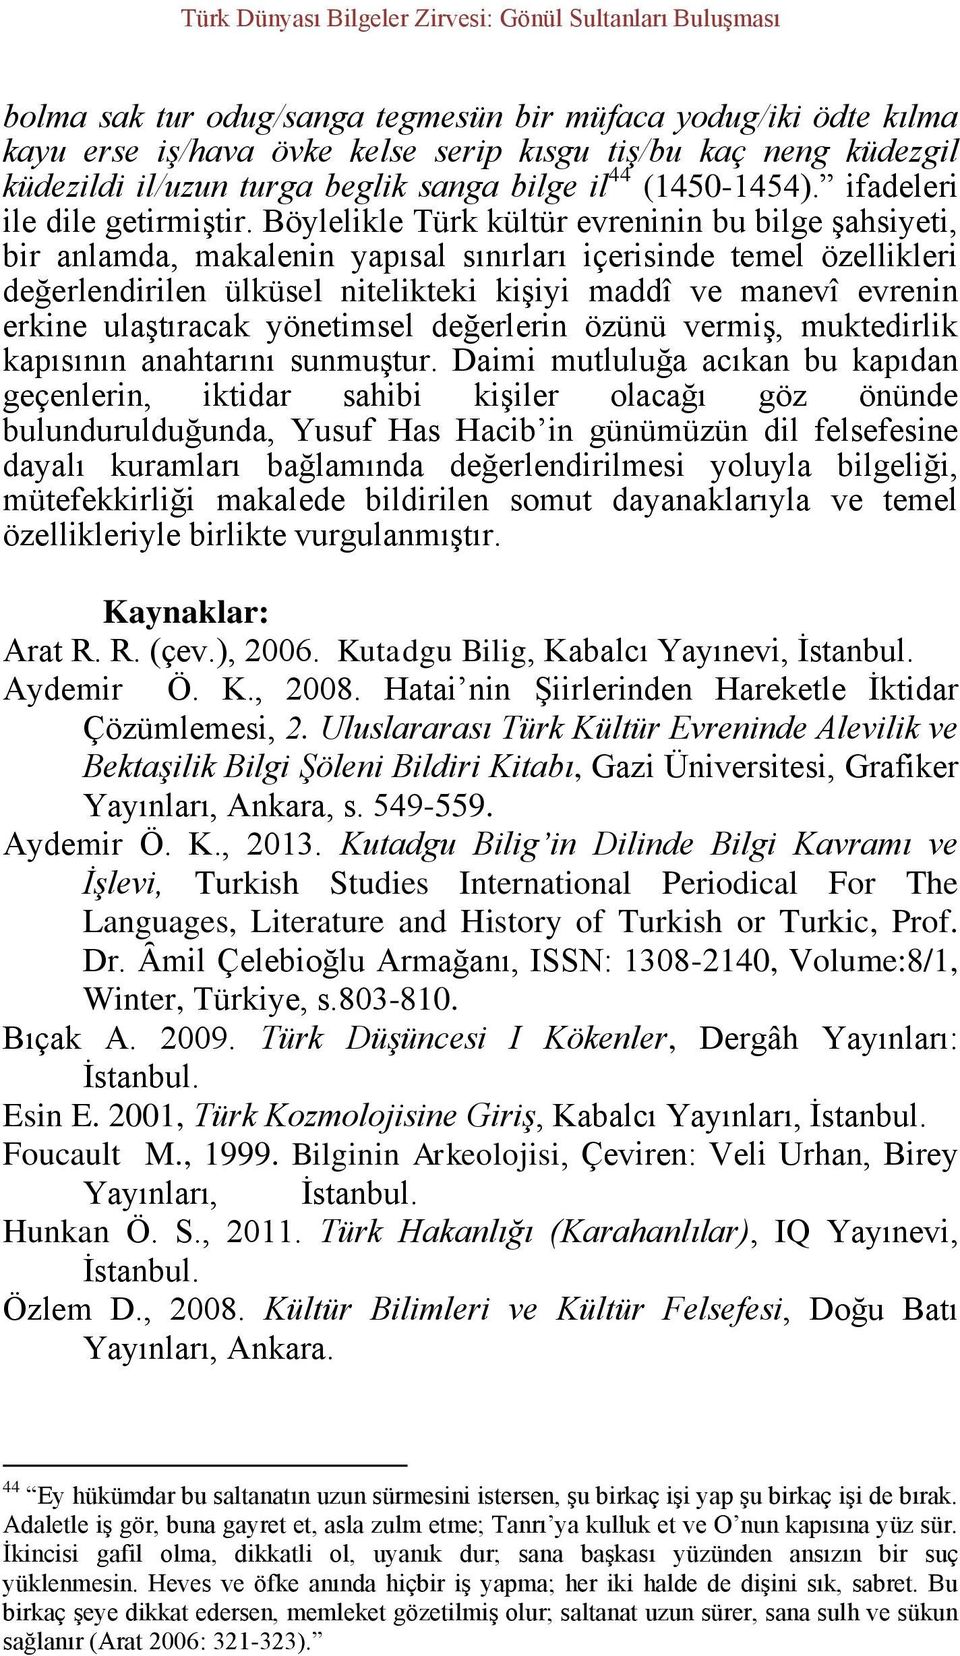 Böylelikle Türk kültür evreninin bu bilge şahsiyeti, bir anlamda, makalenin yapısal sınırları içerisinde temel özellikleri değerlendirilen ülküsel nitelikteki kişiyi maddî ve manevî evrenin erkine